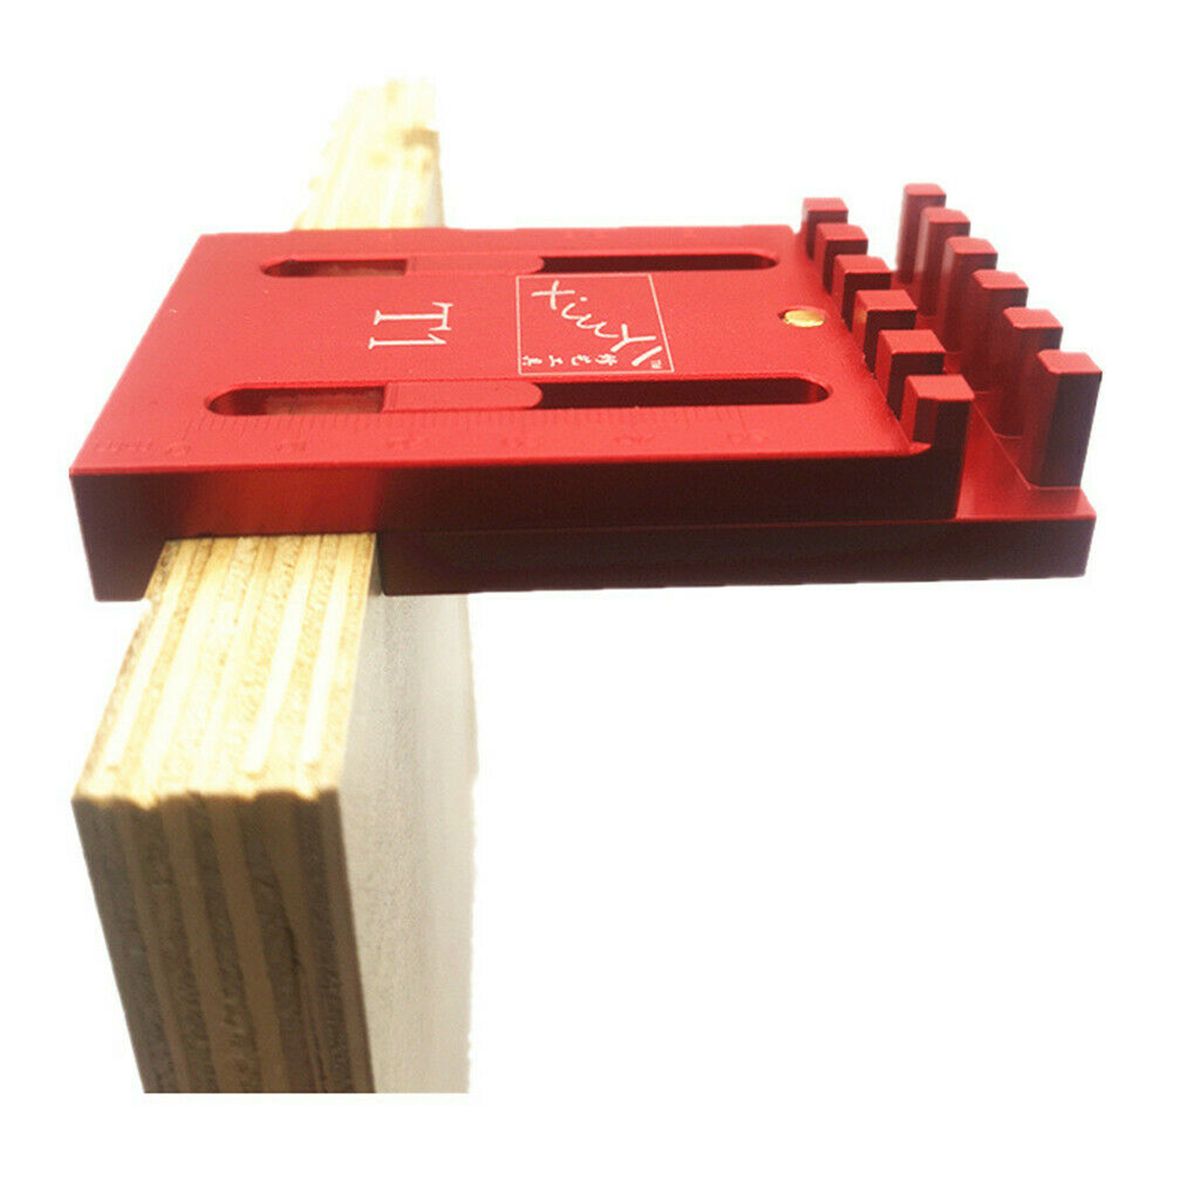 Woodworking-Gaps-Gauge-Depth-Measuring-Ruler-Line-Sawtooth-Ruler-Marking-1653996